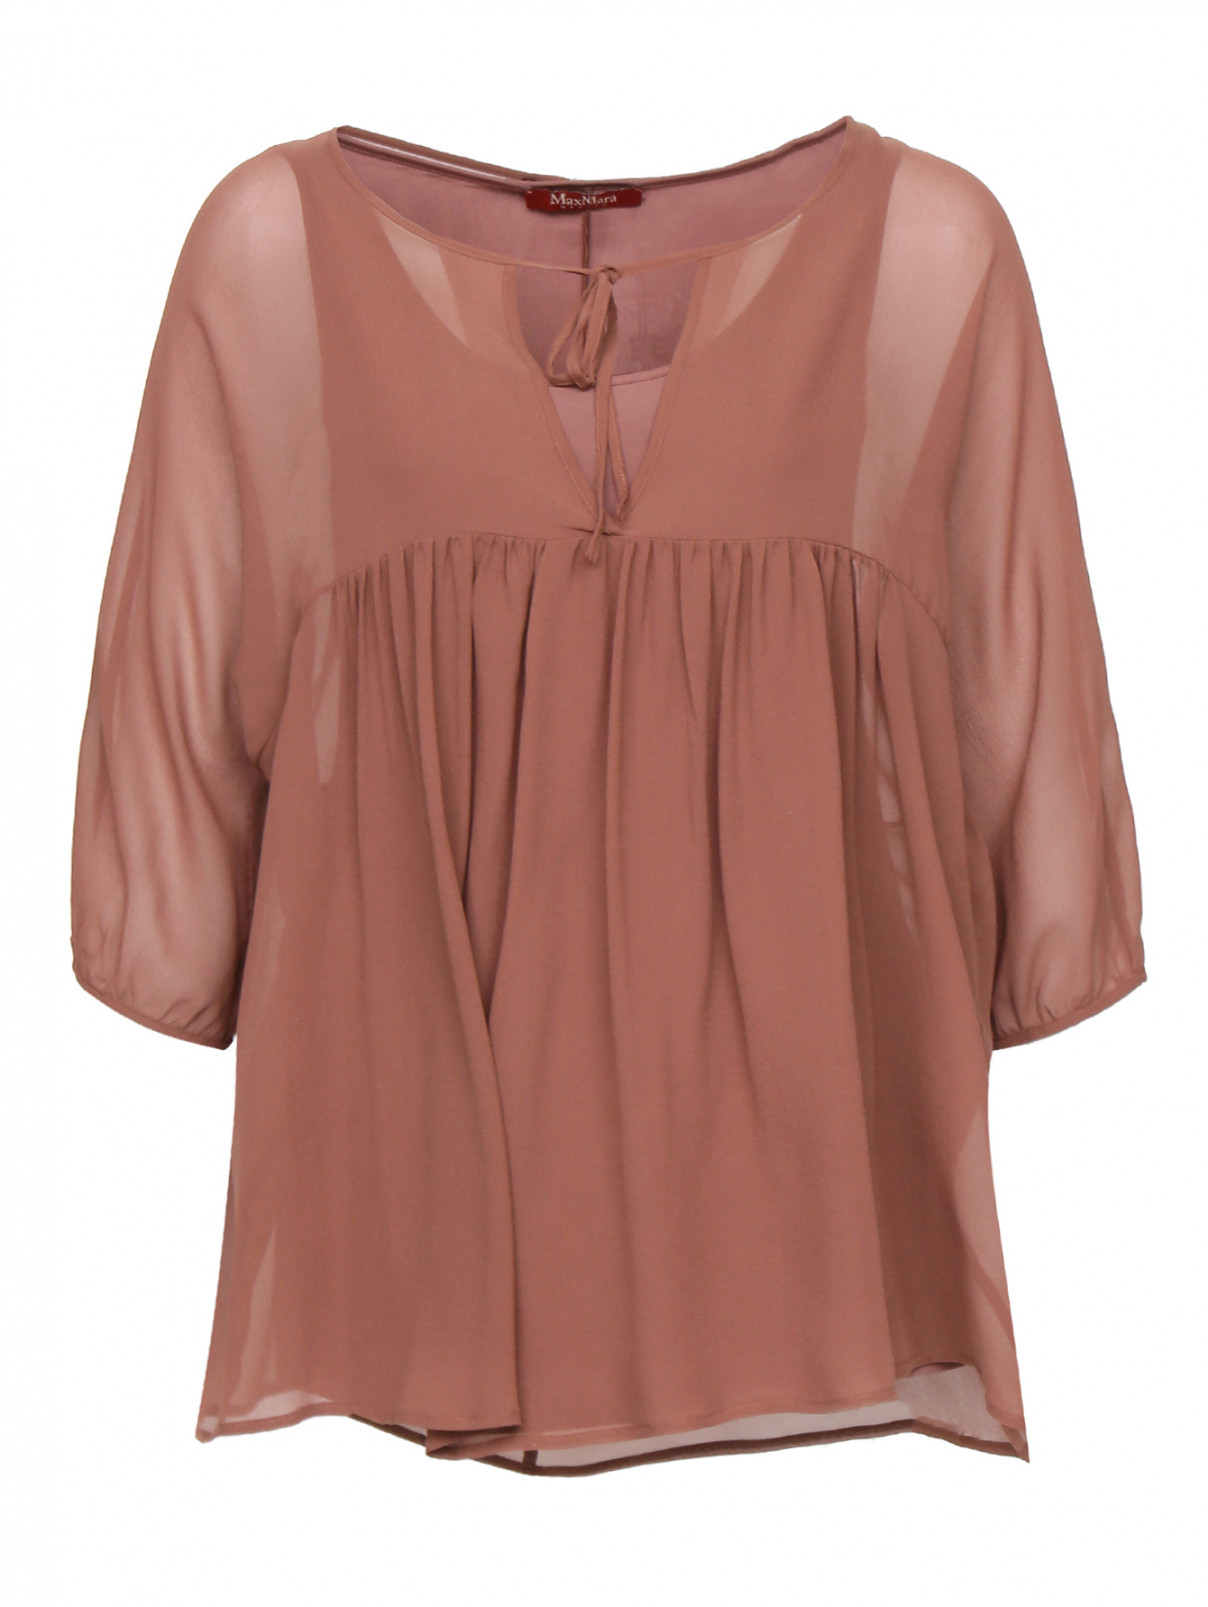 Полупрозрачная блуза из шелка свободного фасона Max Mara  –  Общий вид  – Цвет:  Коричневый